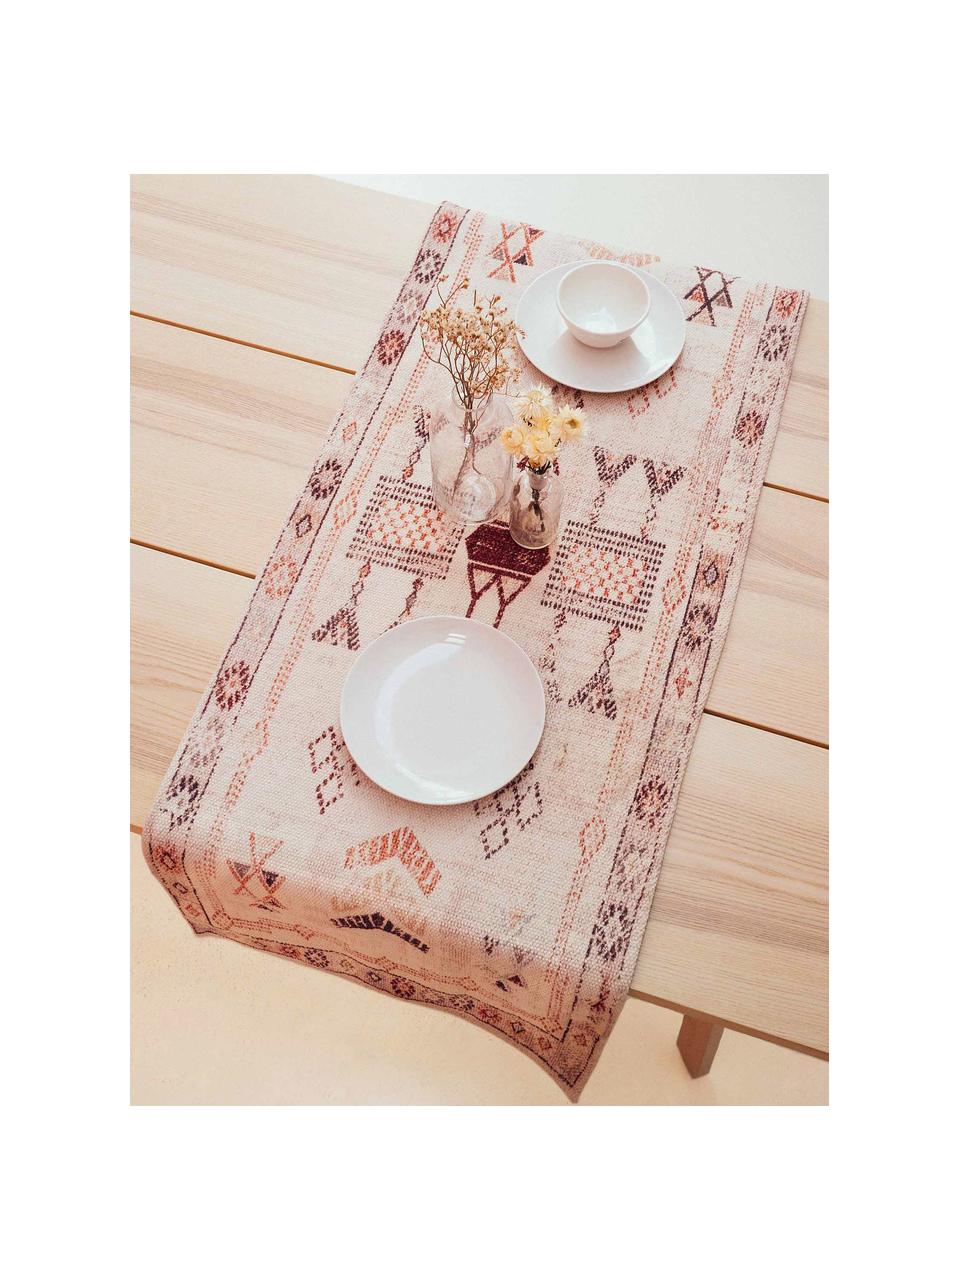 Camino de mesa de algodón Tanger, estilo étnico, 100% algodón, Crema, terracota, An 50 x L 150 cm